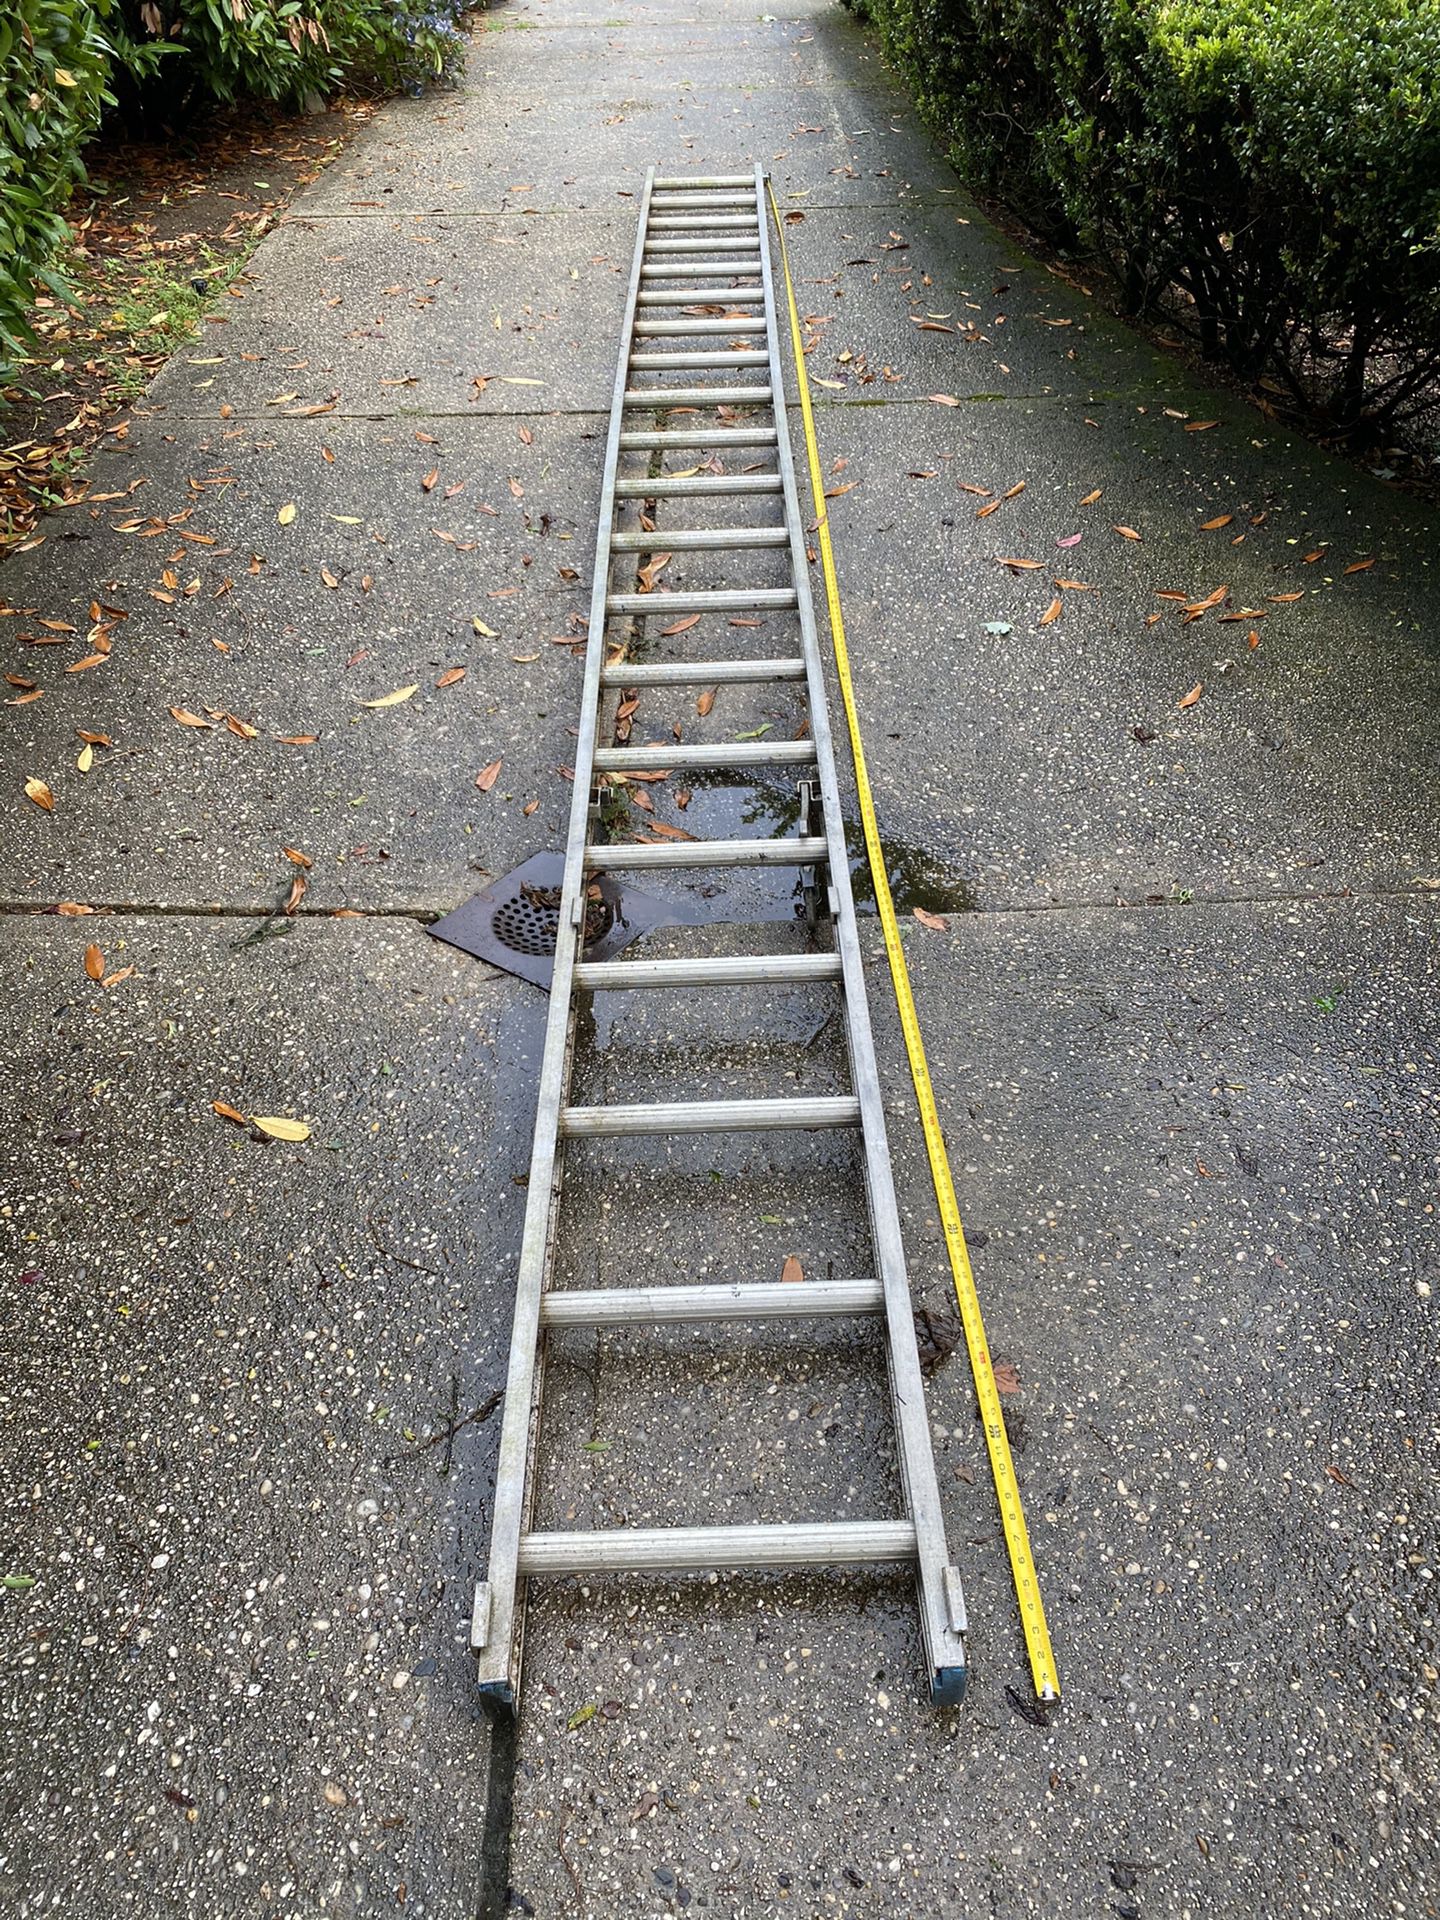 Big ass ladder